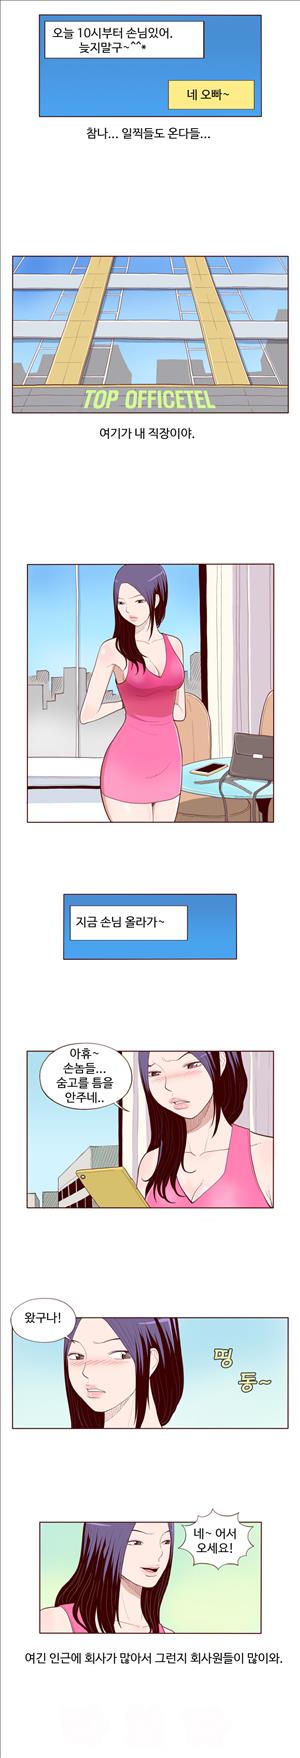 미색 - 썰만화 시즌4 50화 - 오피녀의 비밀(상)_2